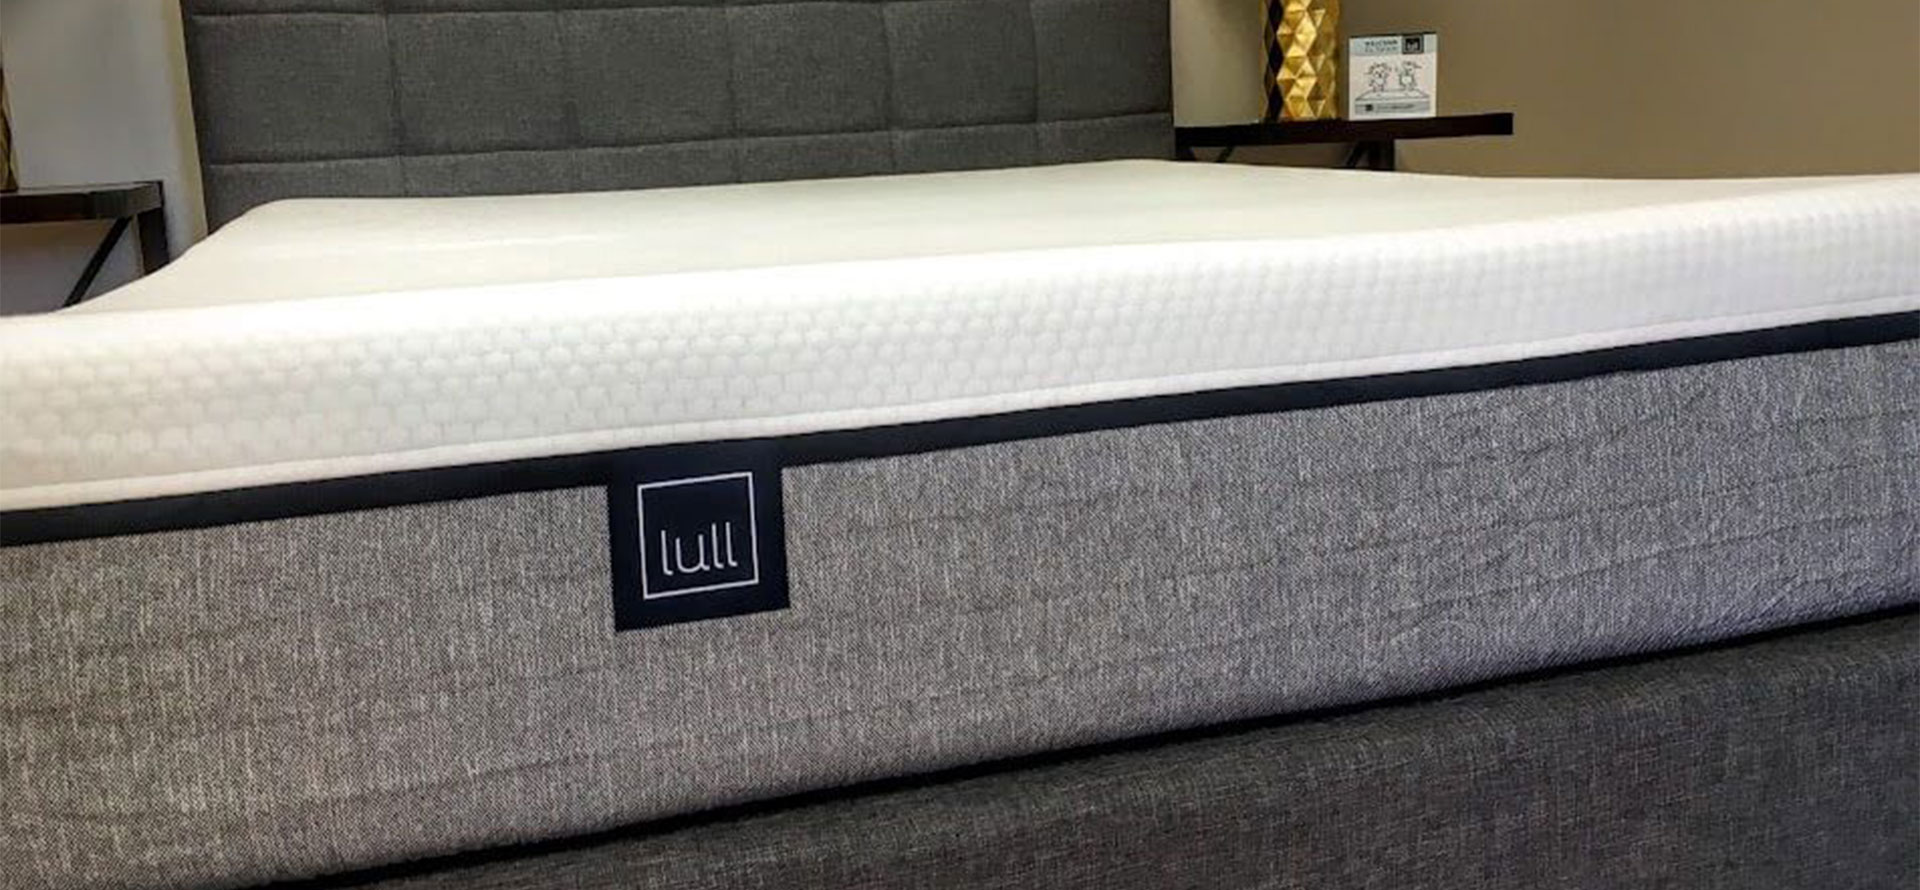 Lull mattress review.